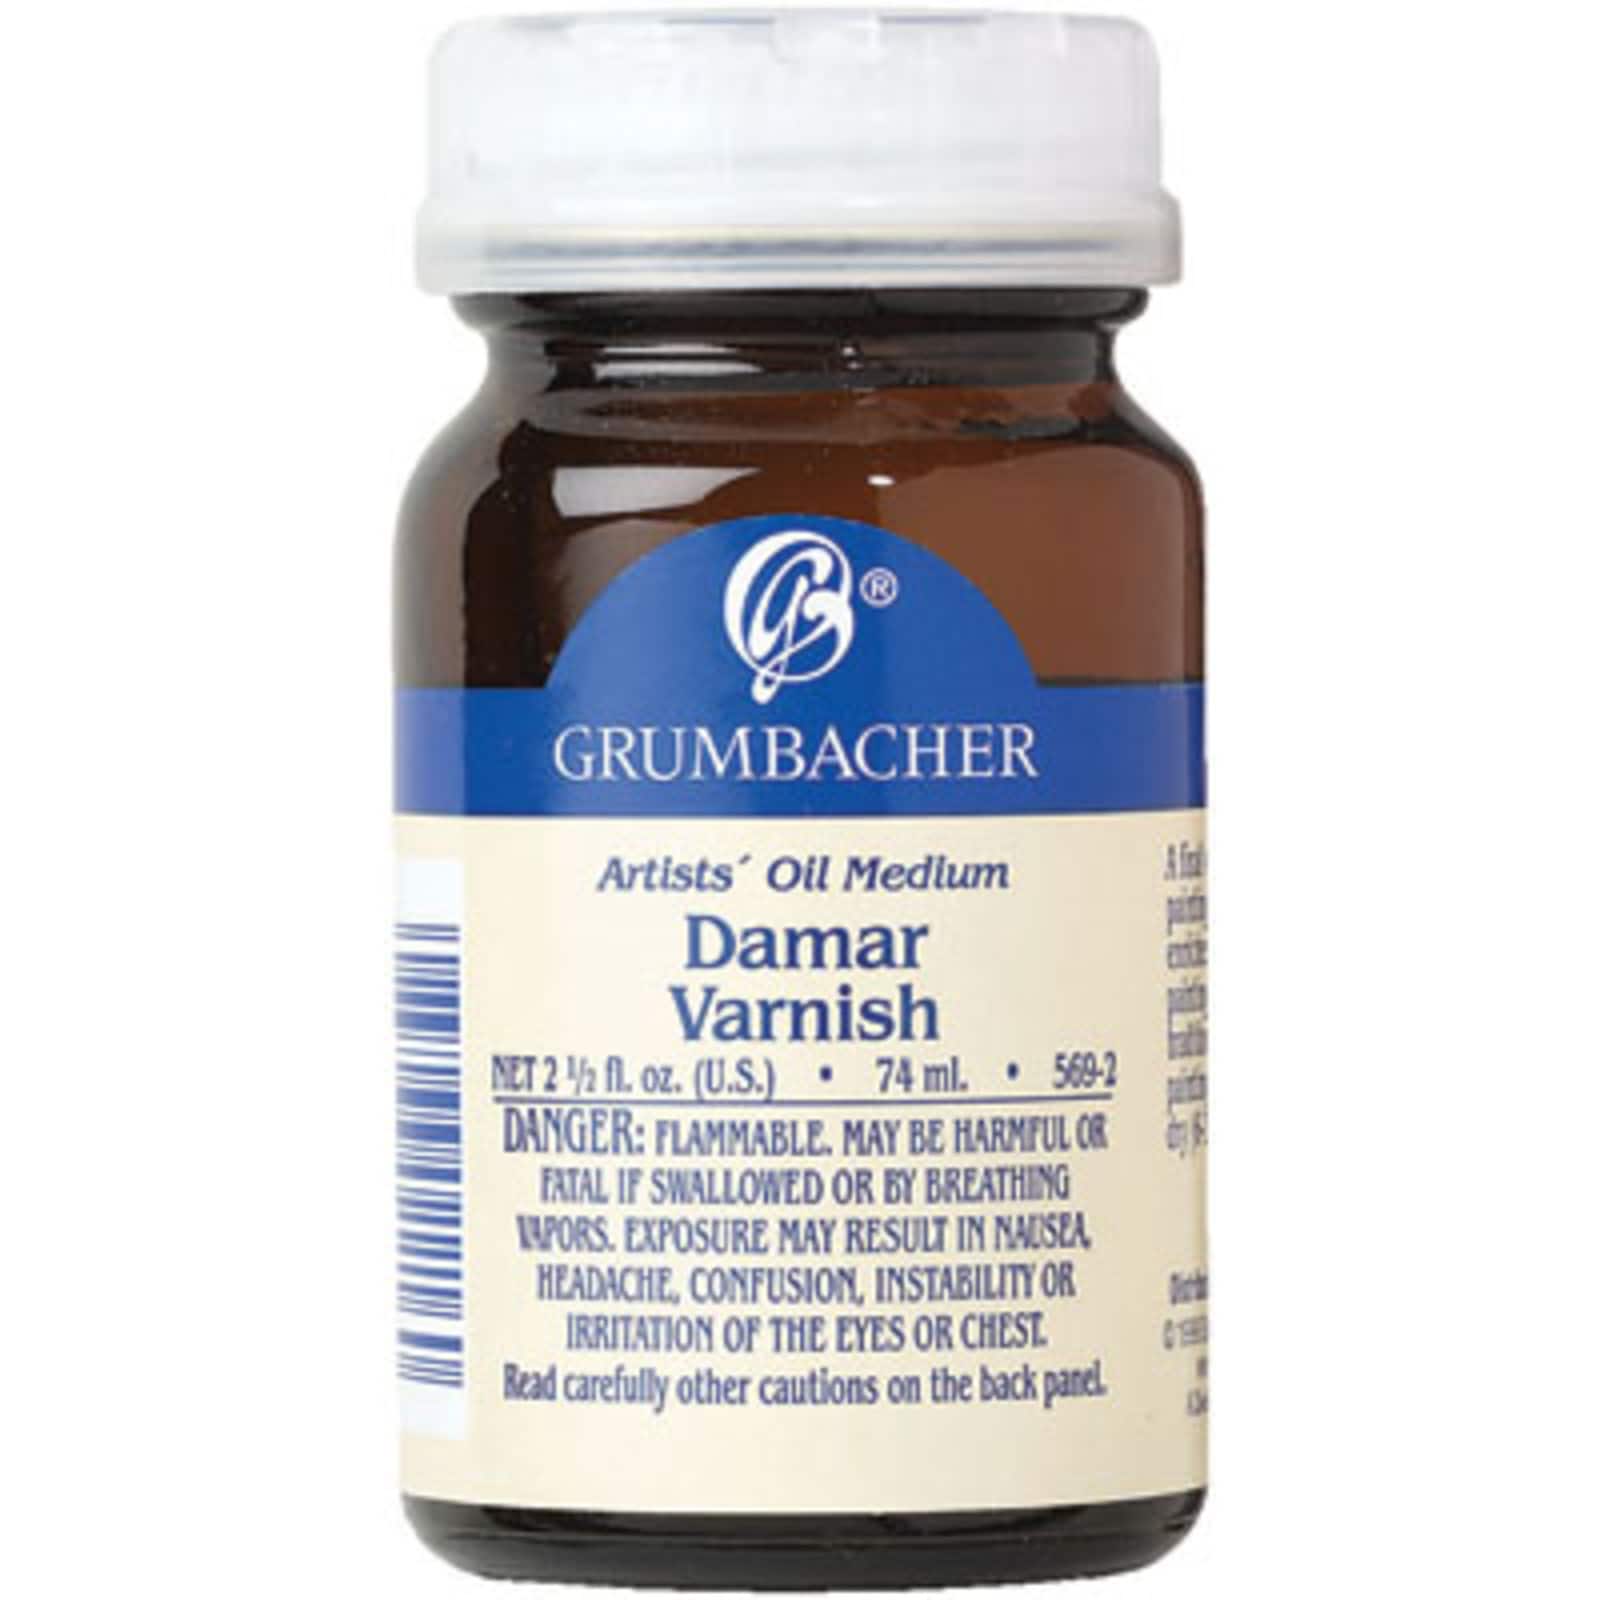 Grumbacher Damar Varnish, Gloss